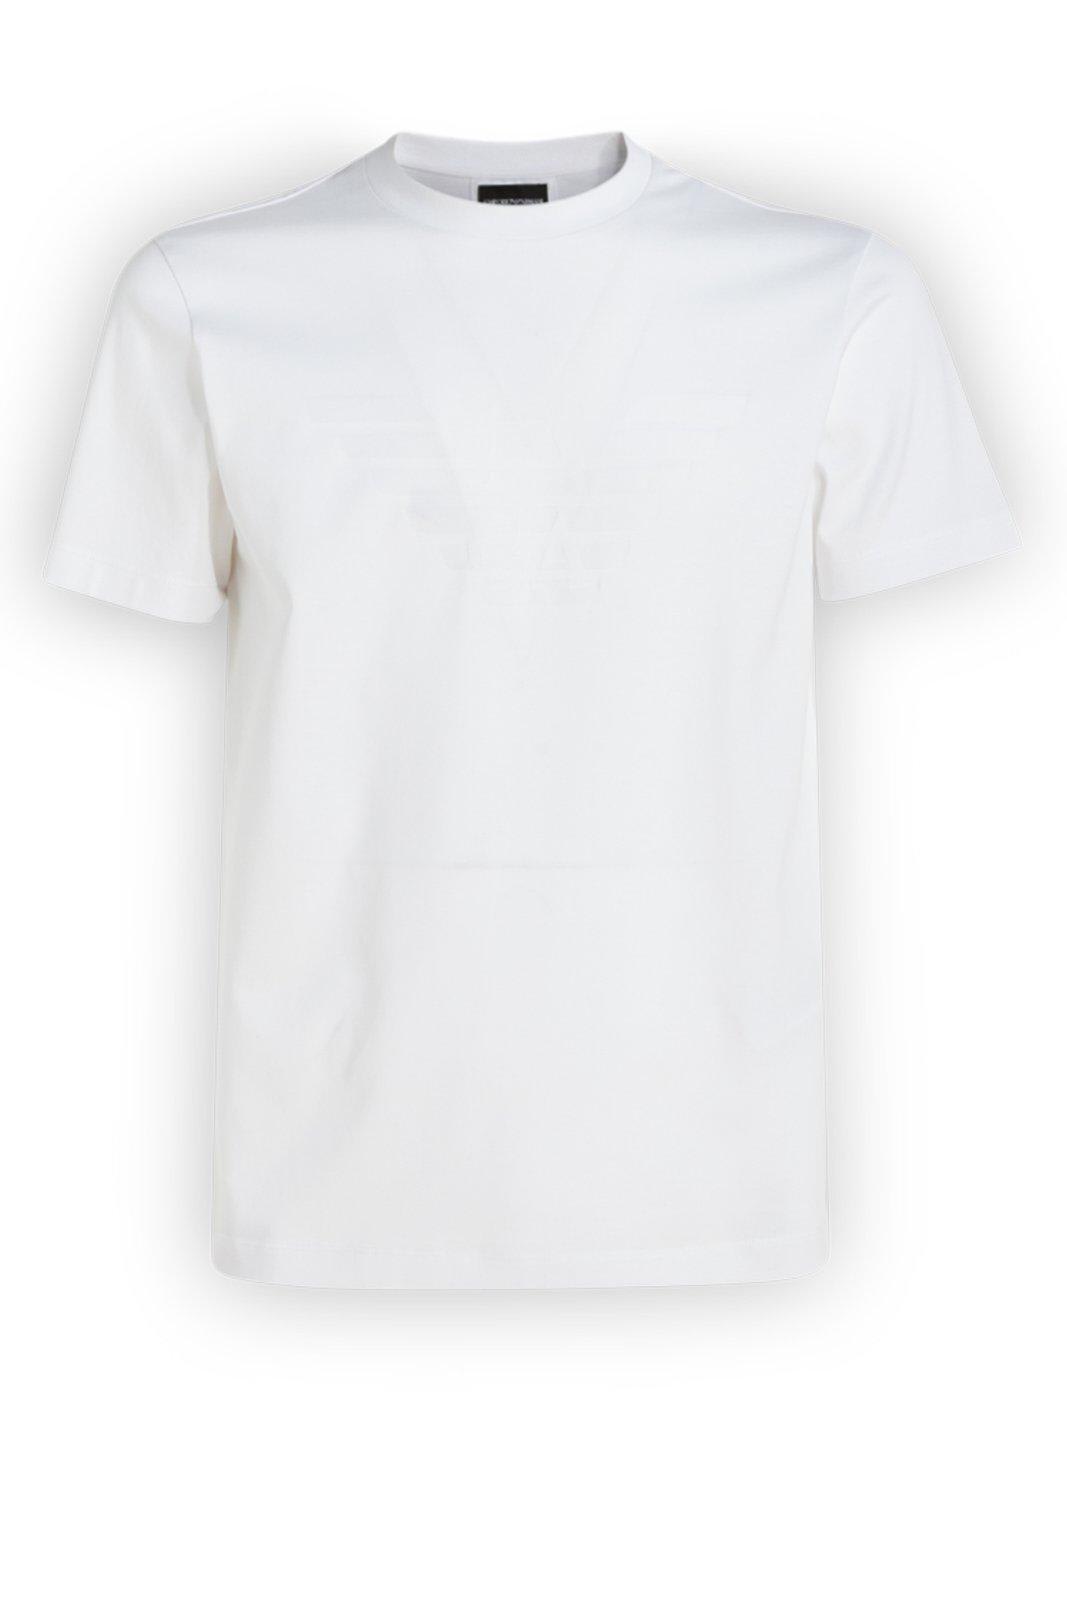 Giorgio Armani Round-neck T-shirt In White | ModeSens